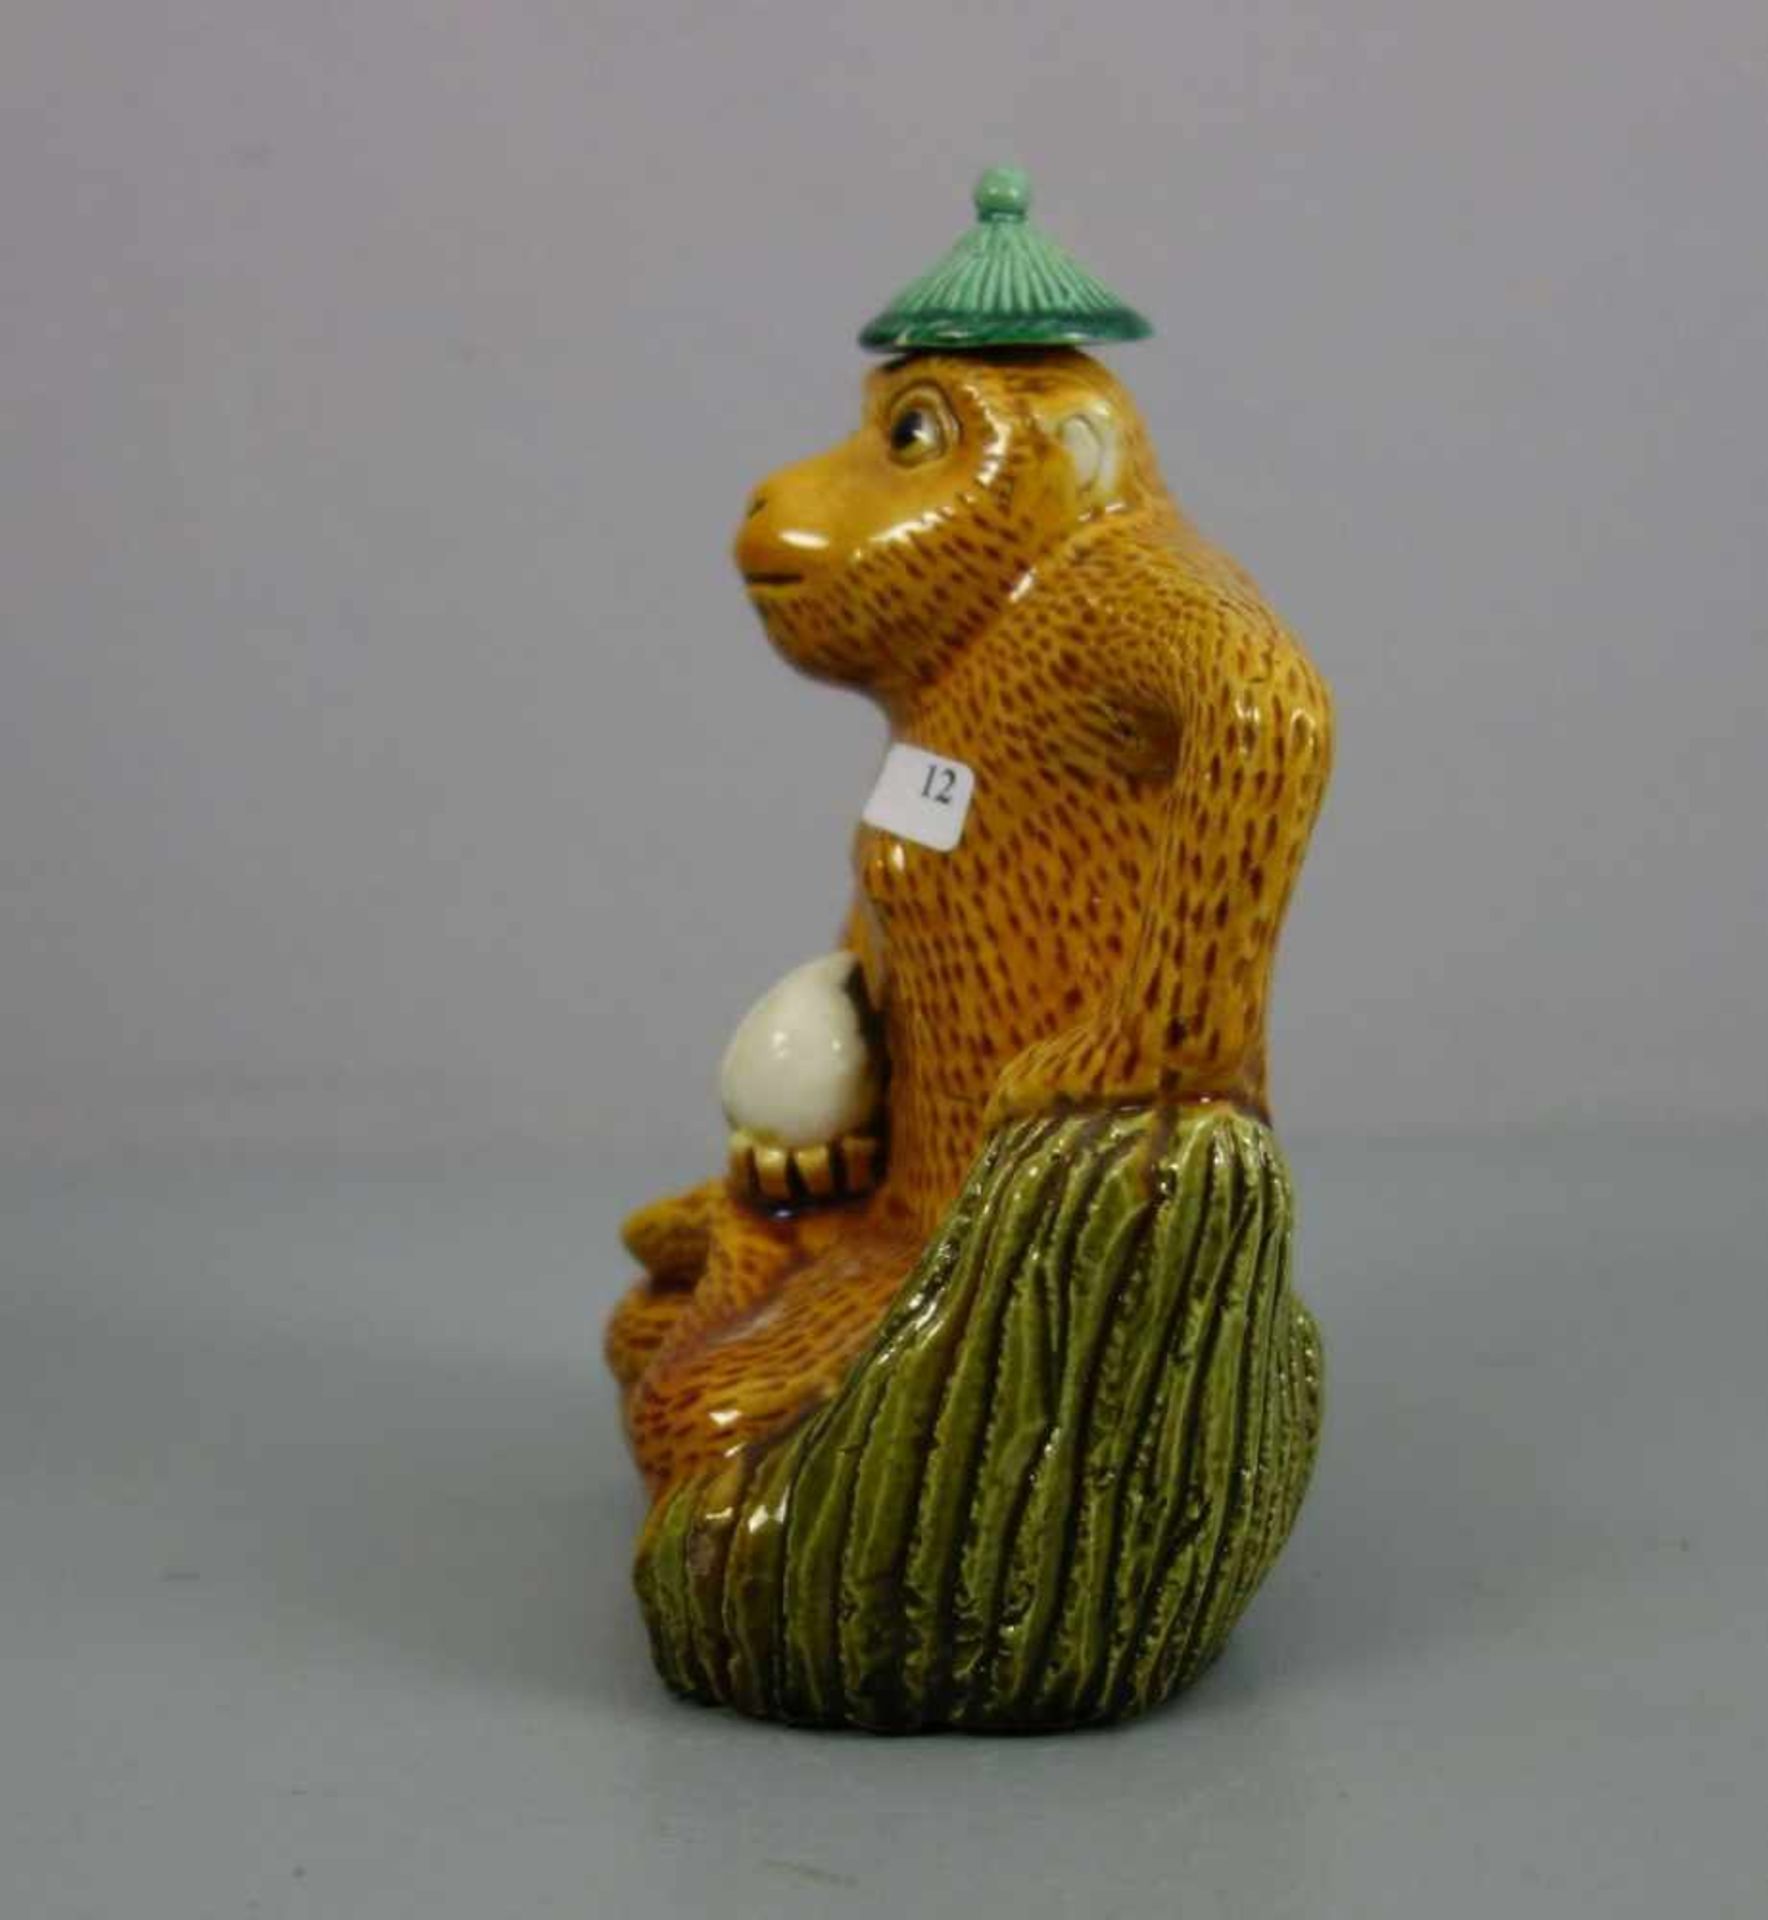 FIGÜRLICHE WEINKANNE / TEEKANNE: "Sitzender Affe" / biscuit wine pot with monkey, China, heller - Bild 2 aus 6